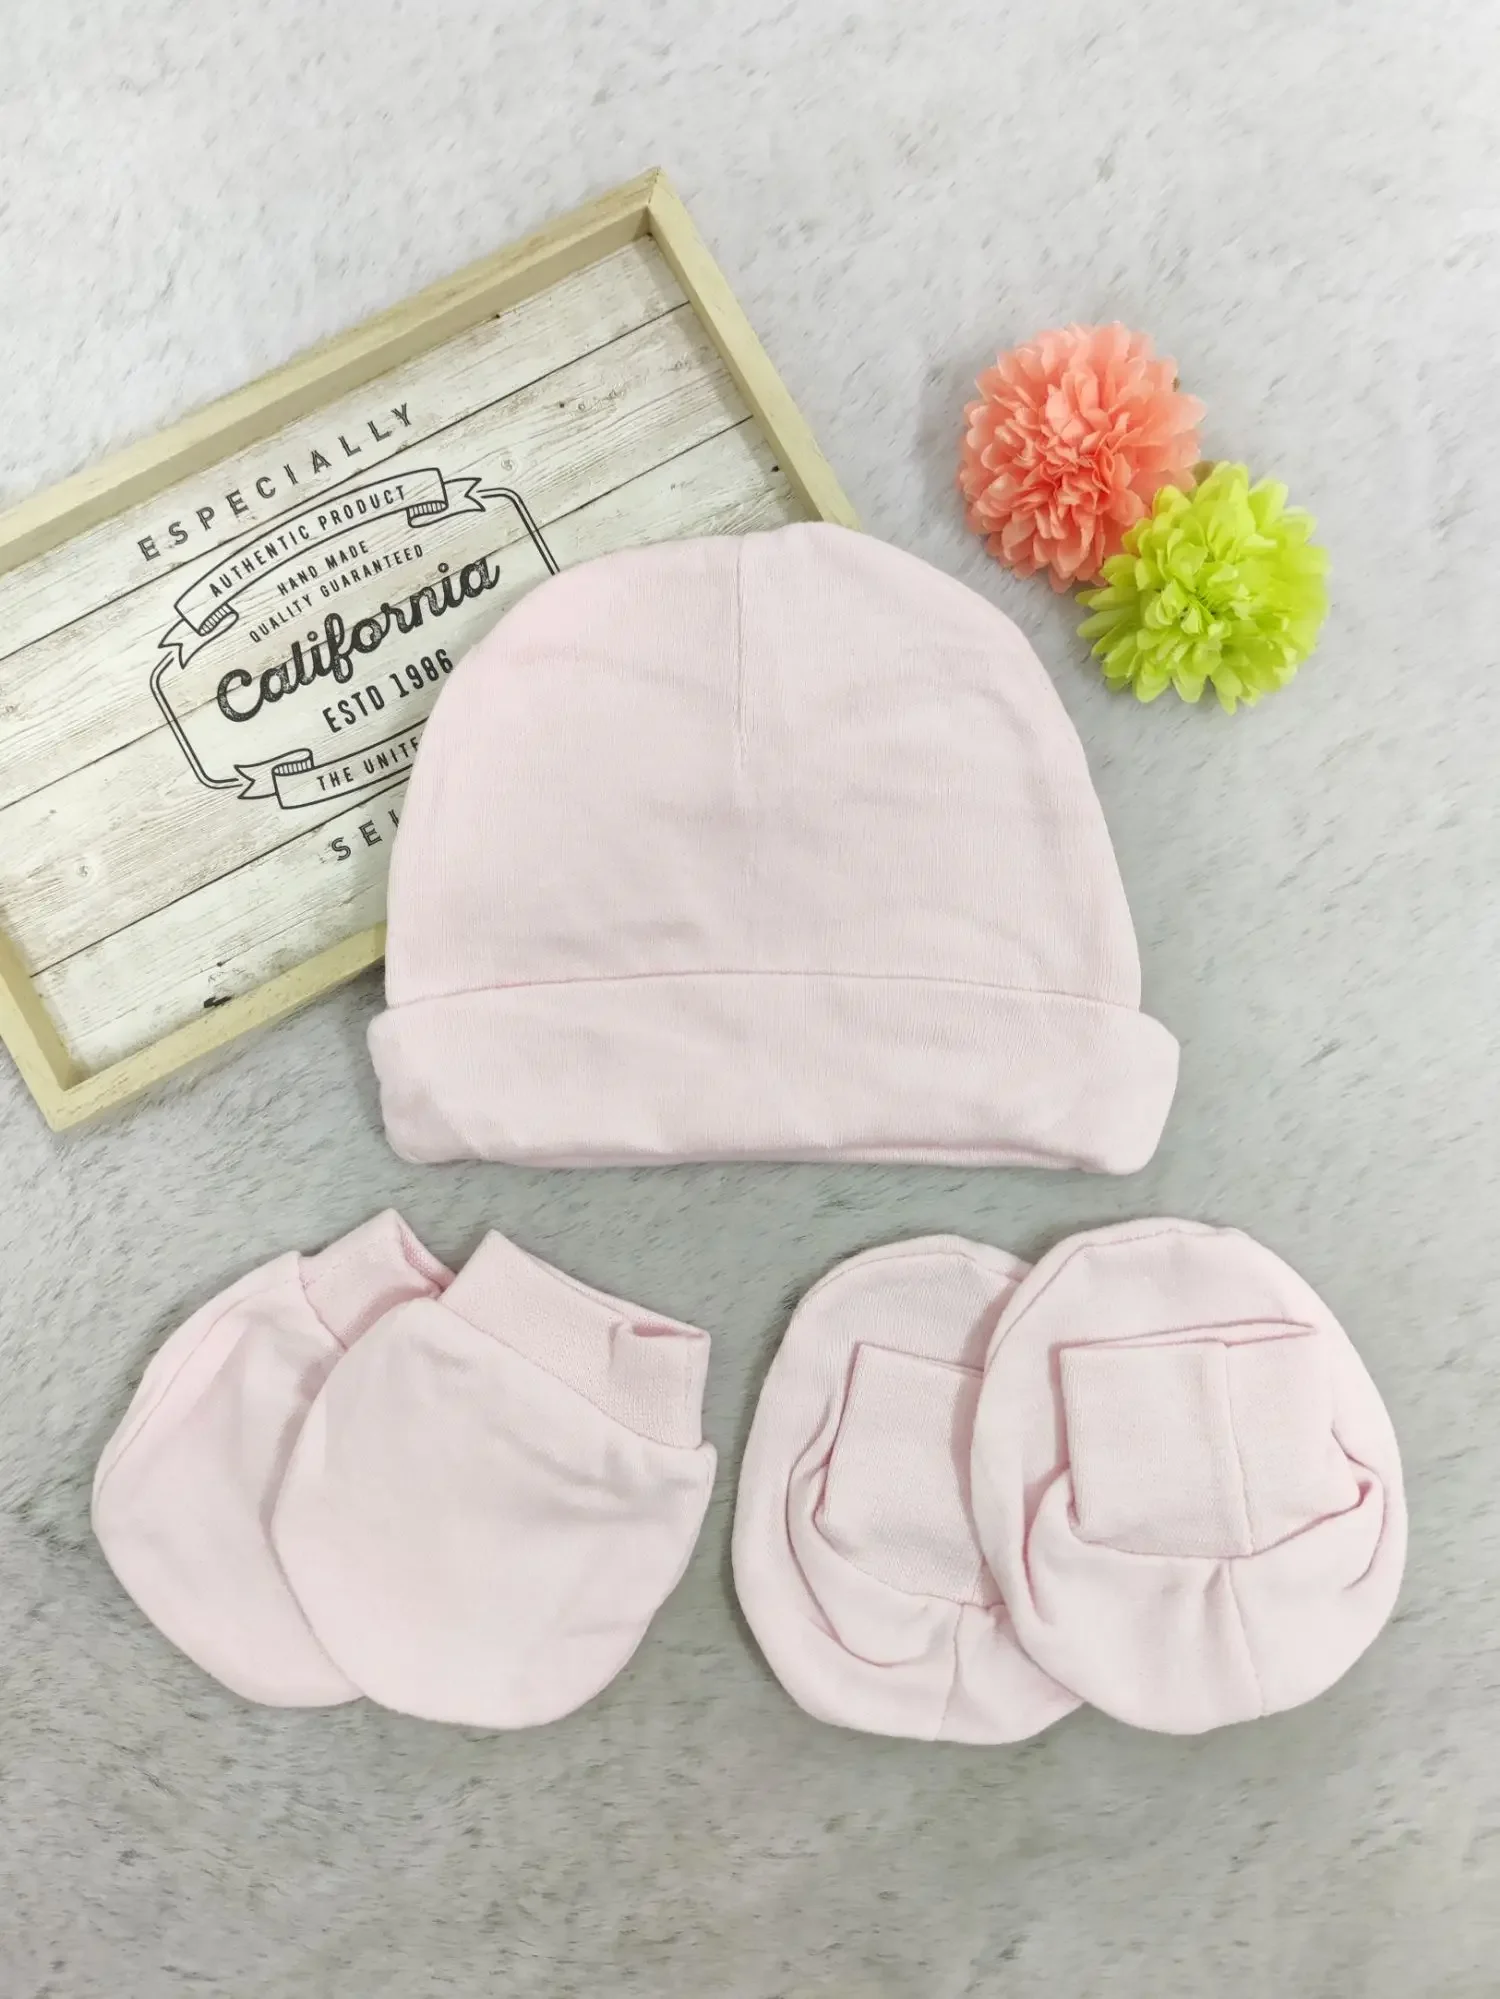 [3 in 1] Newborn Baby Hat Mittens Booties Set (Soft Cotton) (11)